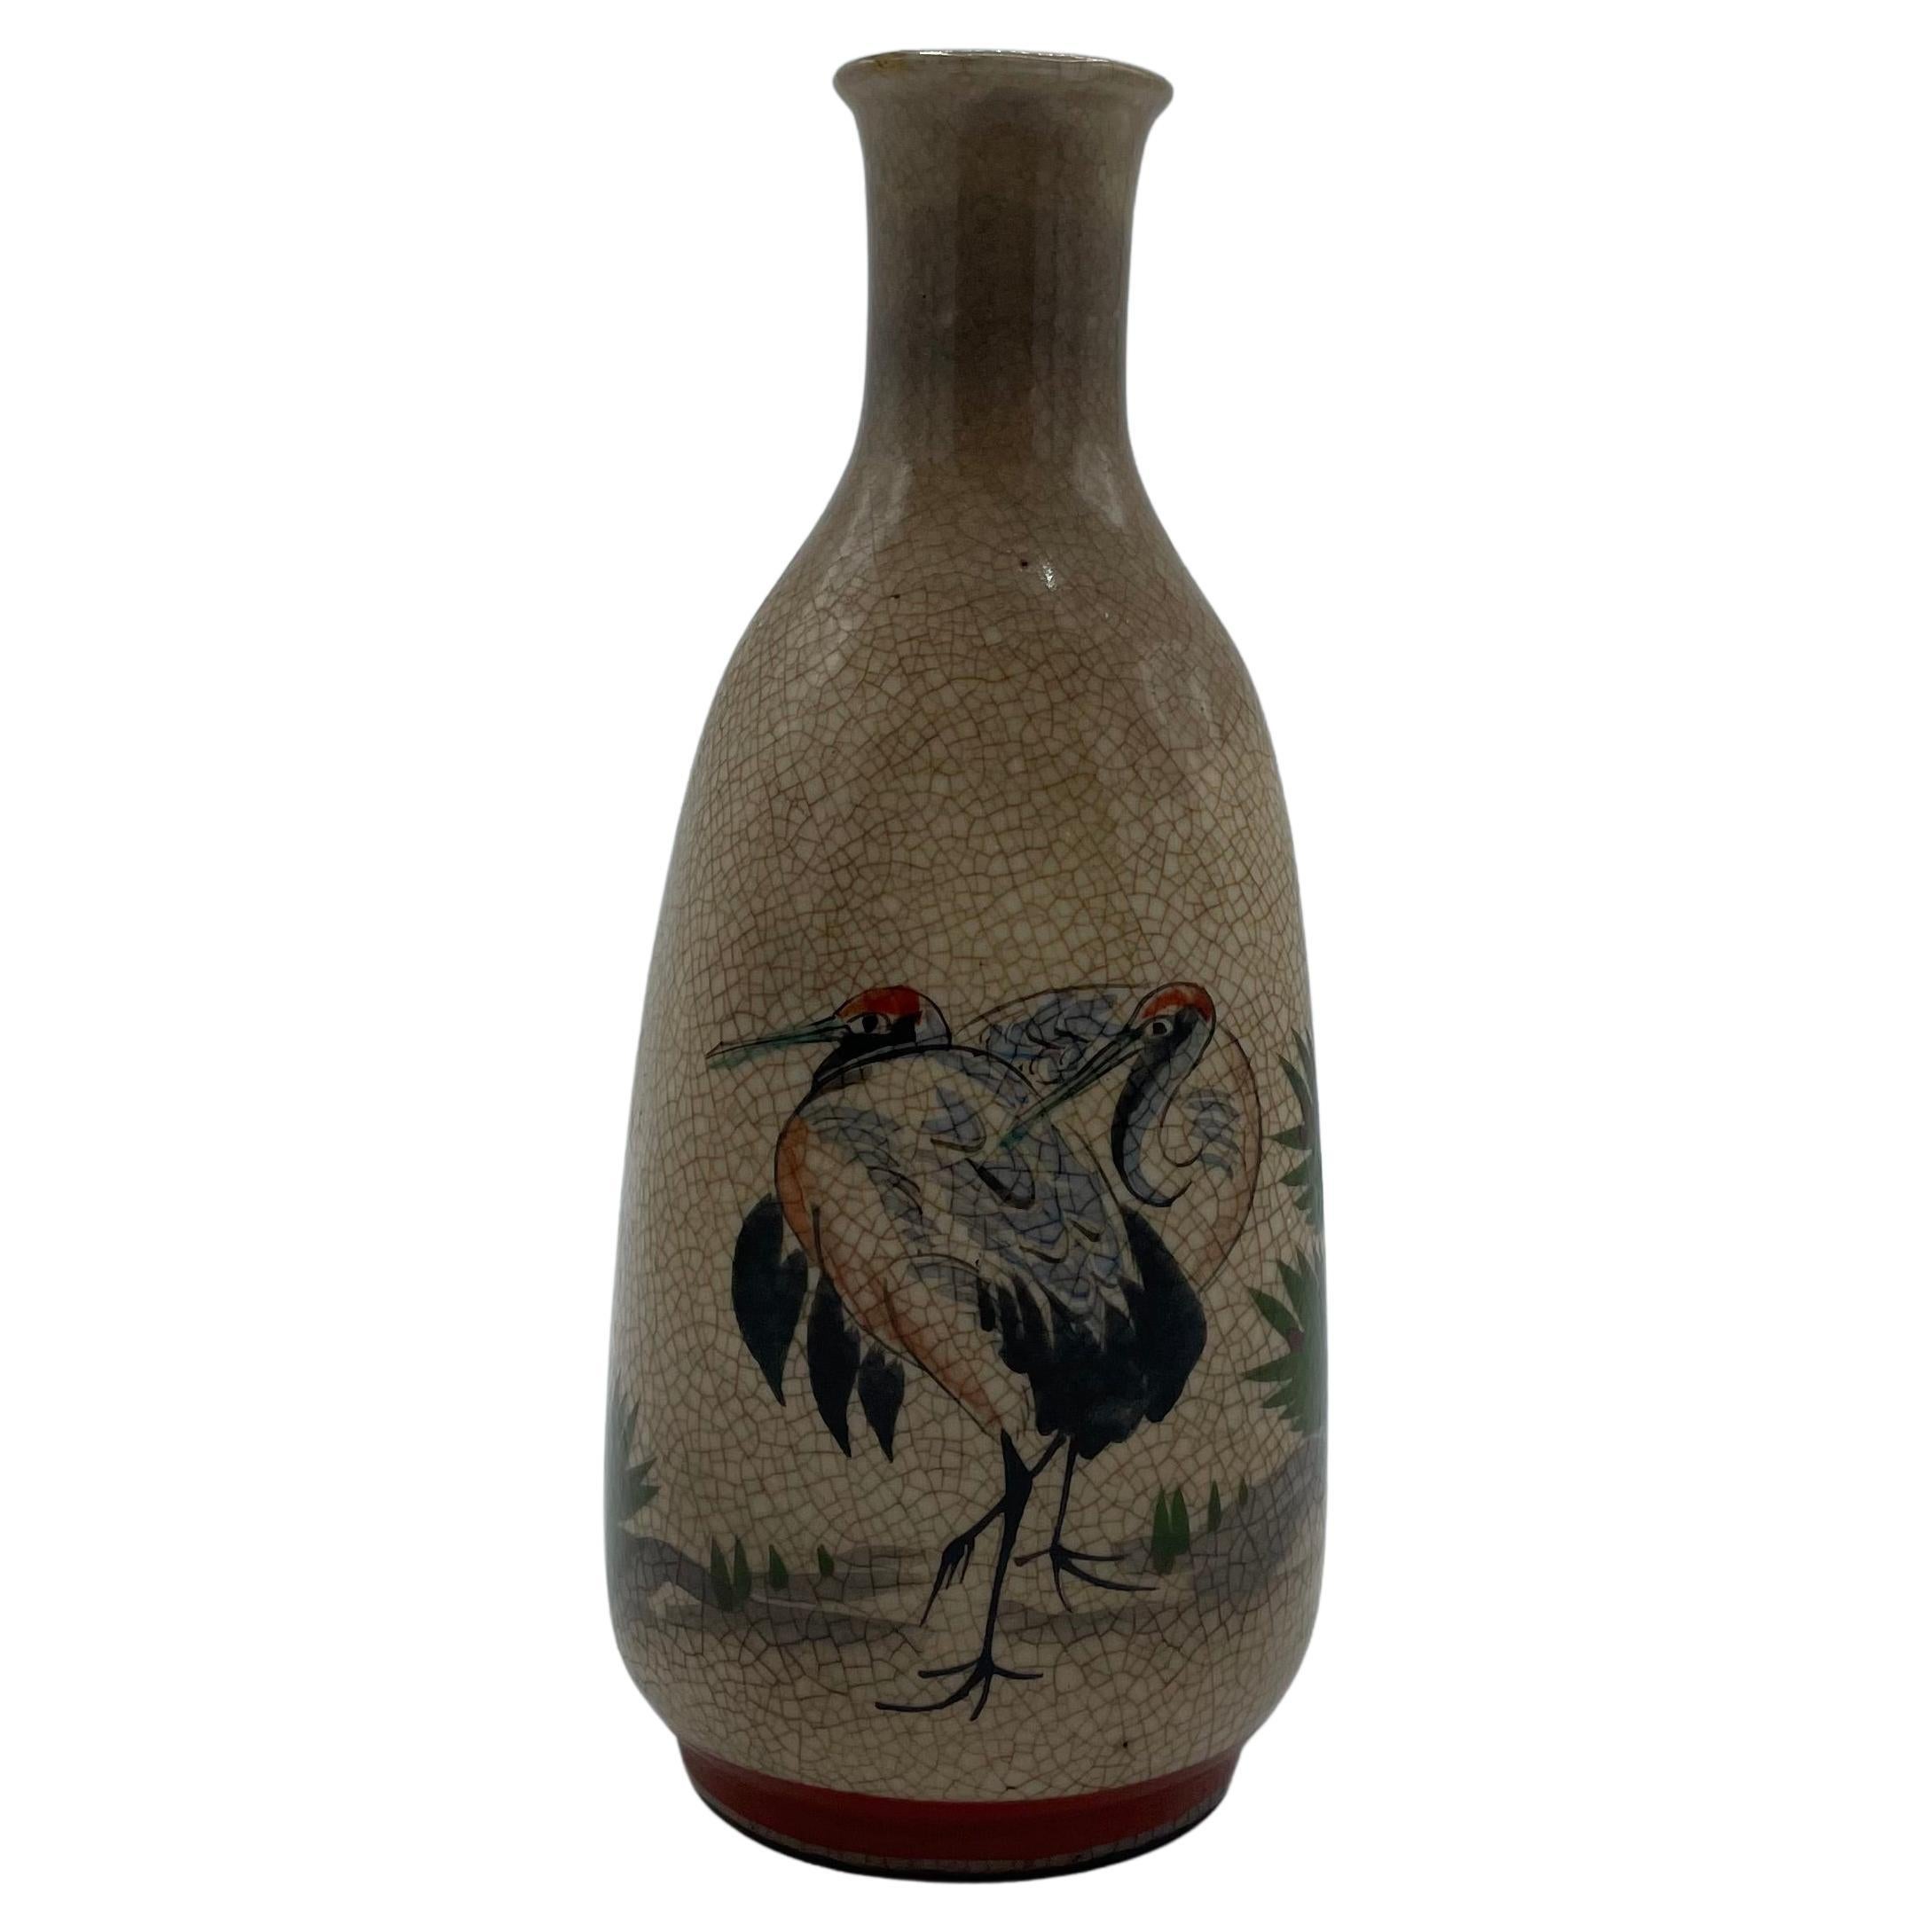 Japanische antike Sake-Flasche mit Tsuru-Vögeln 1960er Jahre